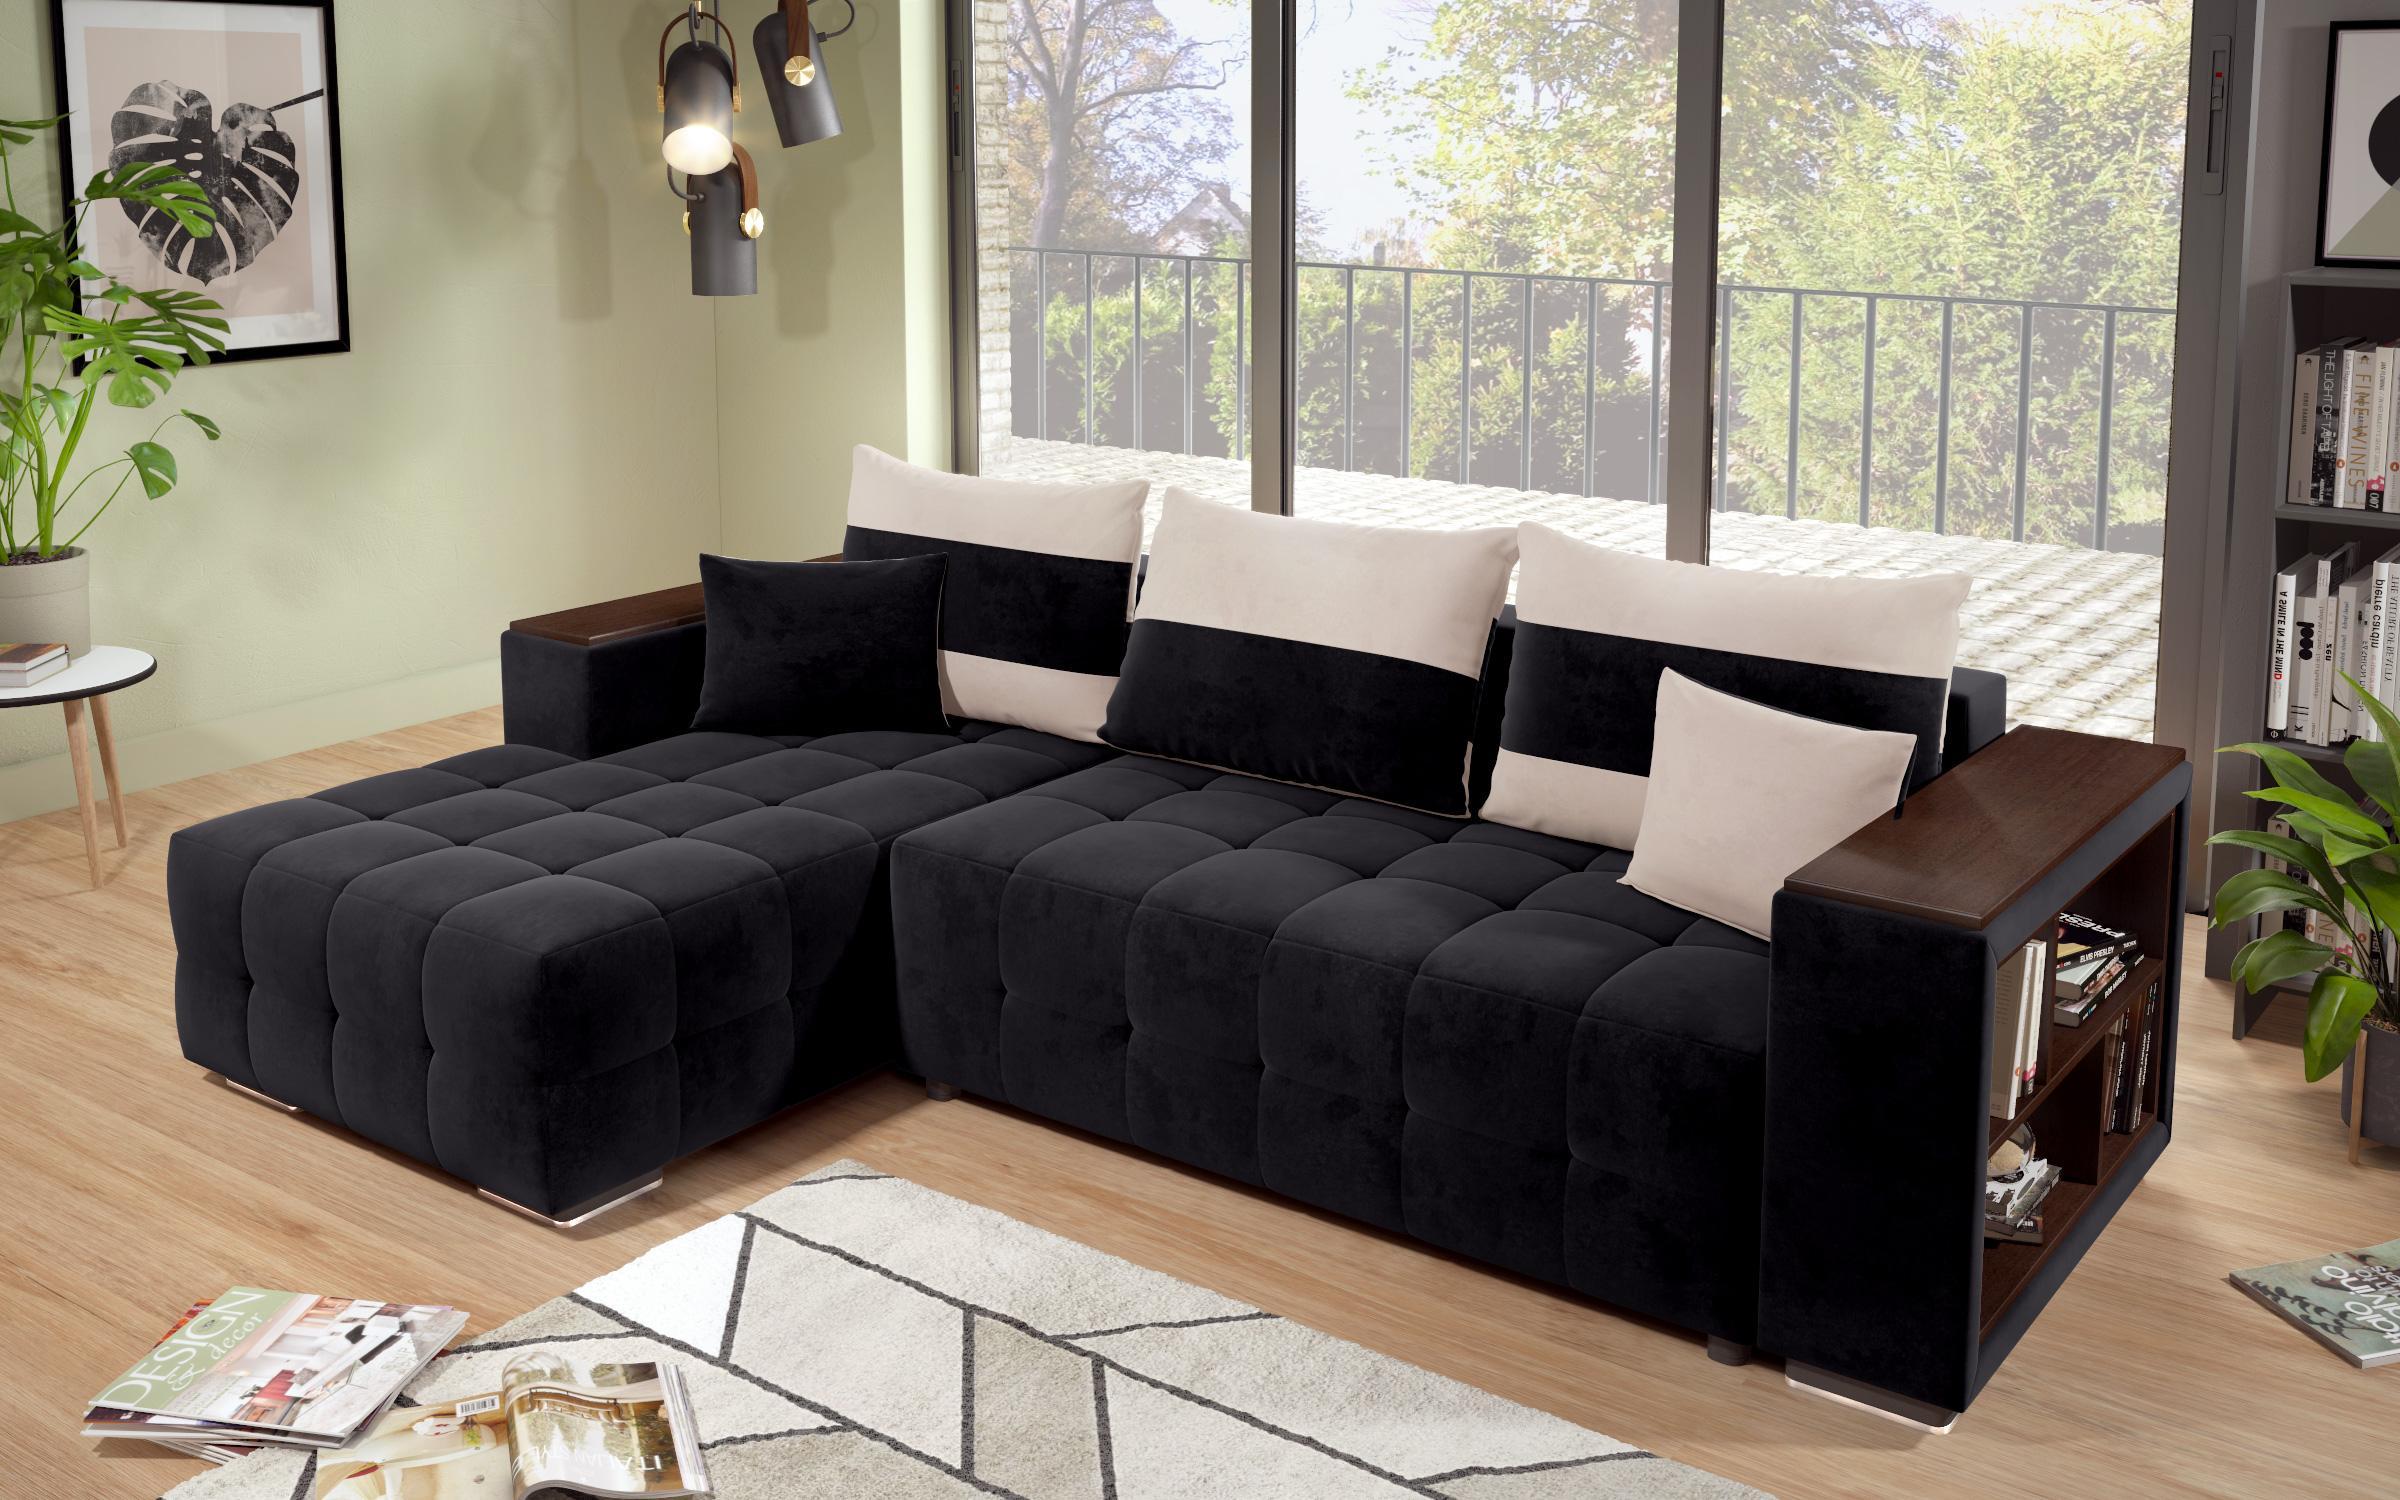 Γωνιακός καναπές - κρεβάτι με ανάκλιντρο και μπράτσο μίνι ραφιέρα Melvin S, μαύρο + ανοιχτό μπεζ  5